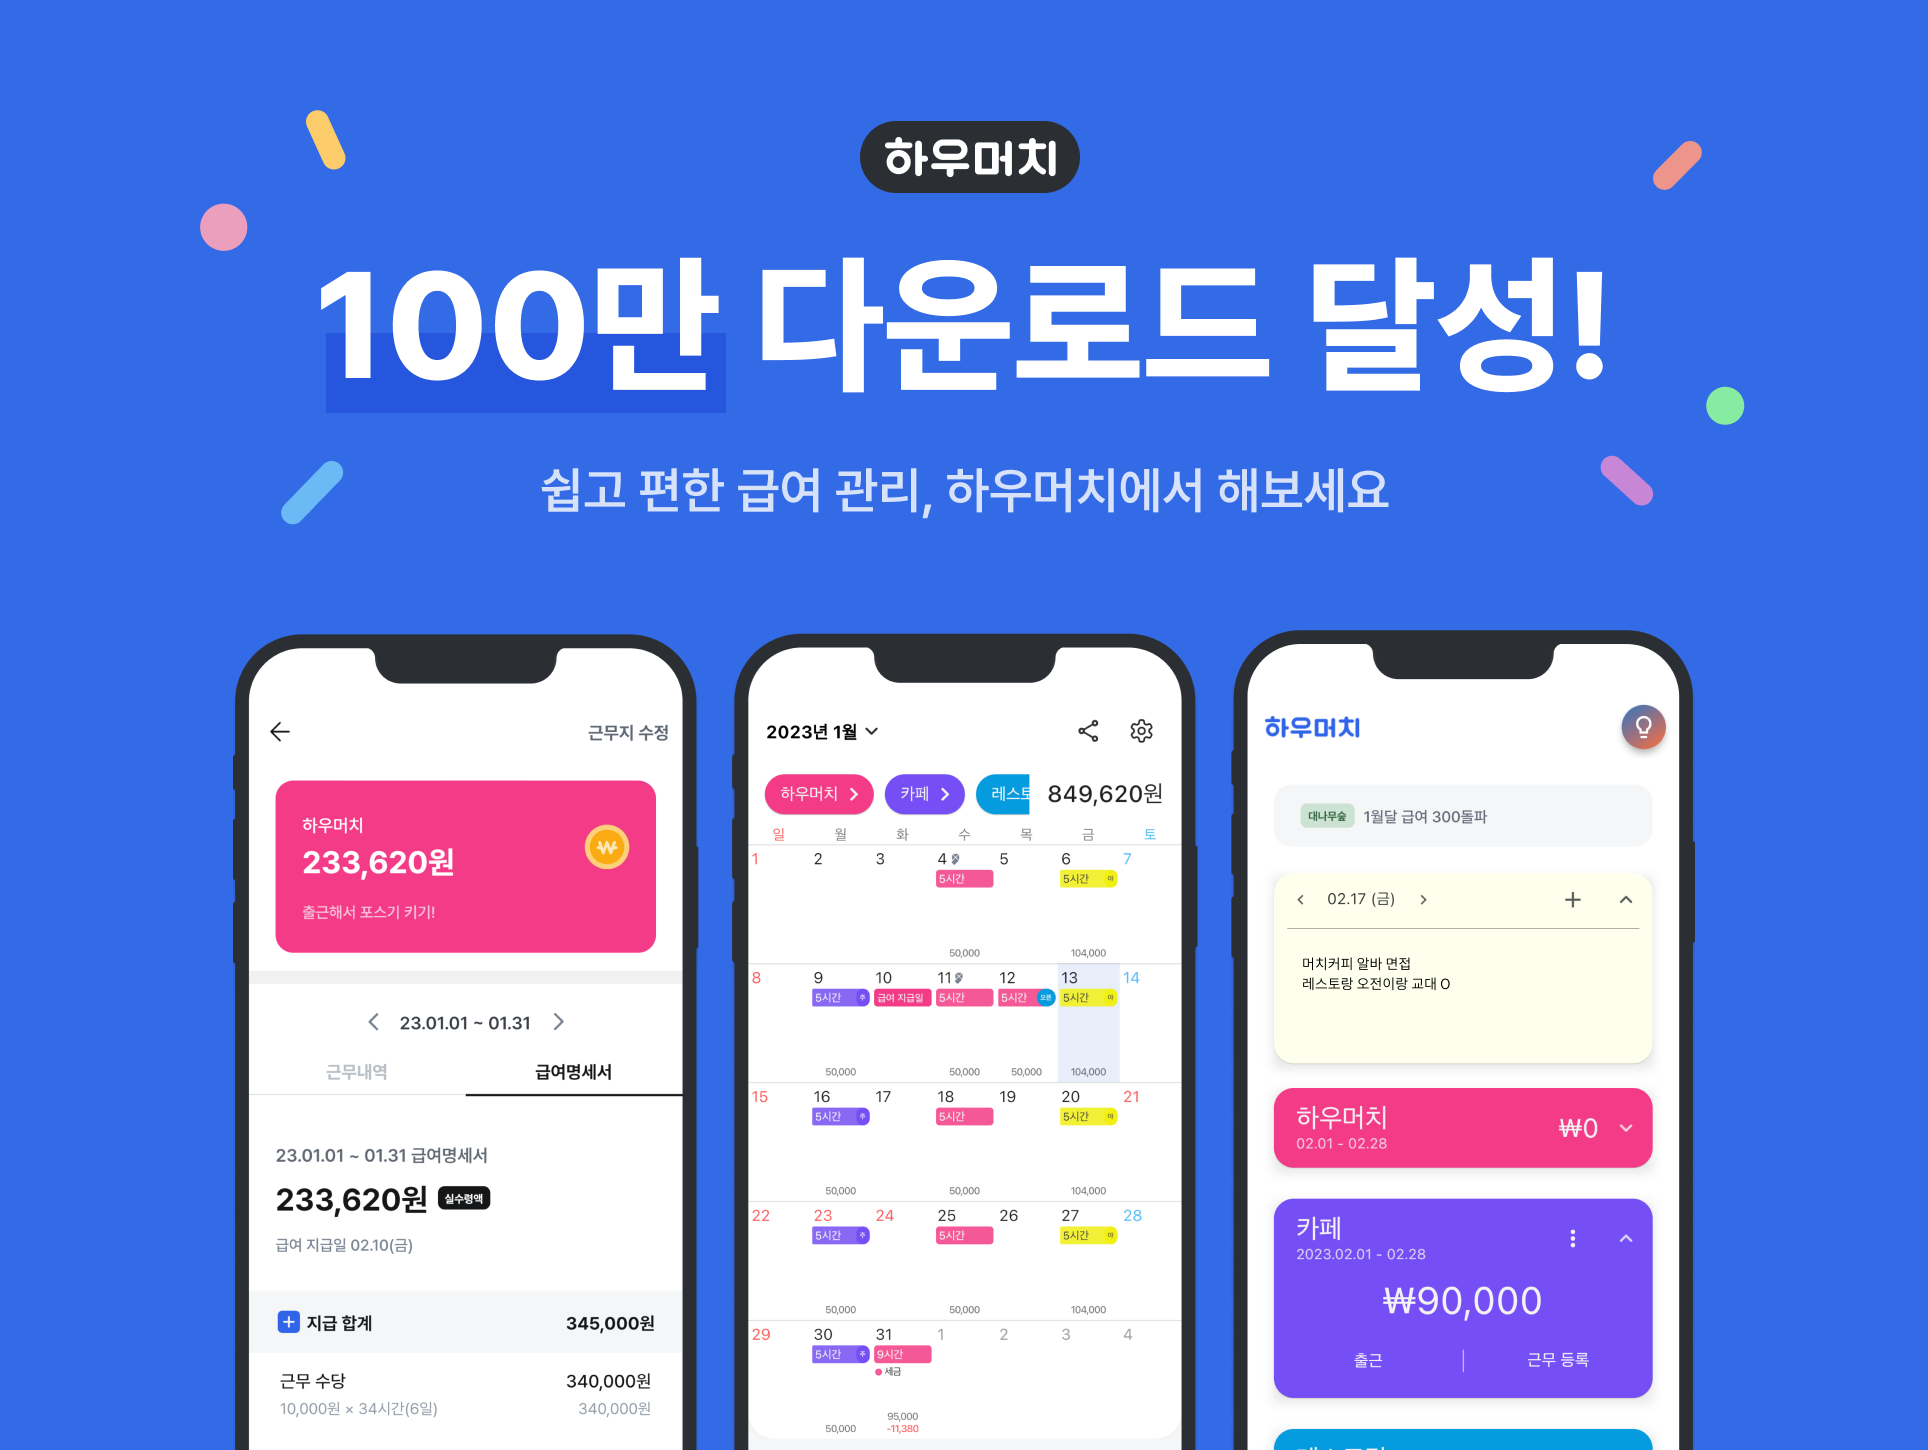 아르바이트 필수 앱  '하우머치' 
누적 다운로드 수 100만 돌파